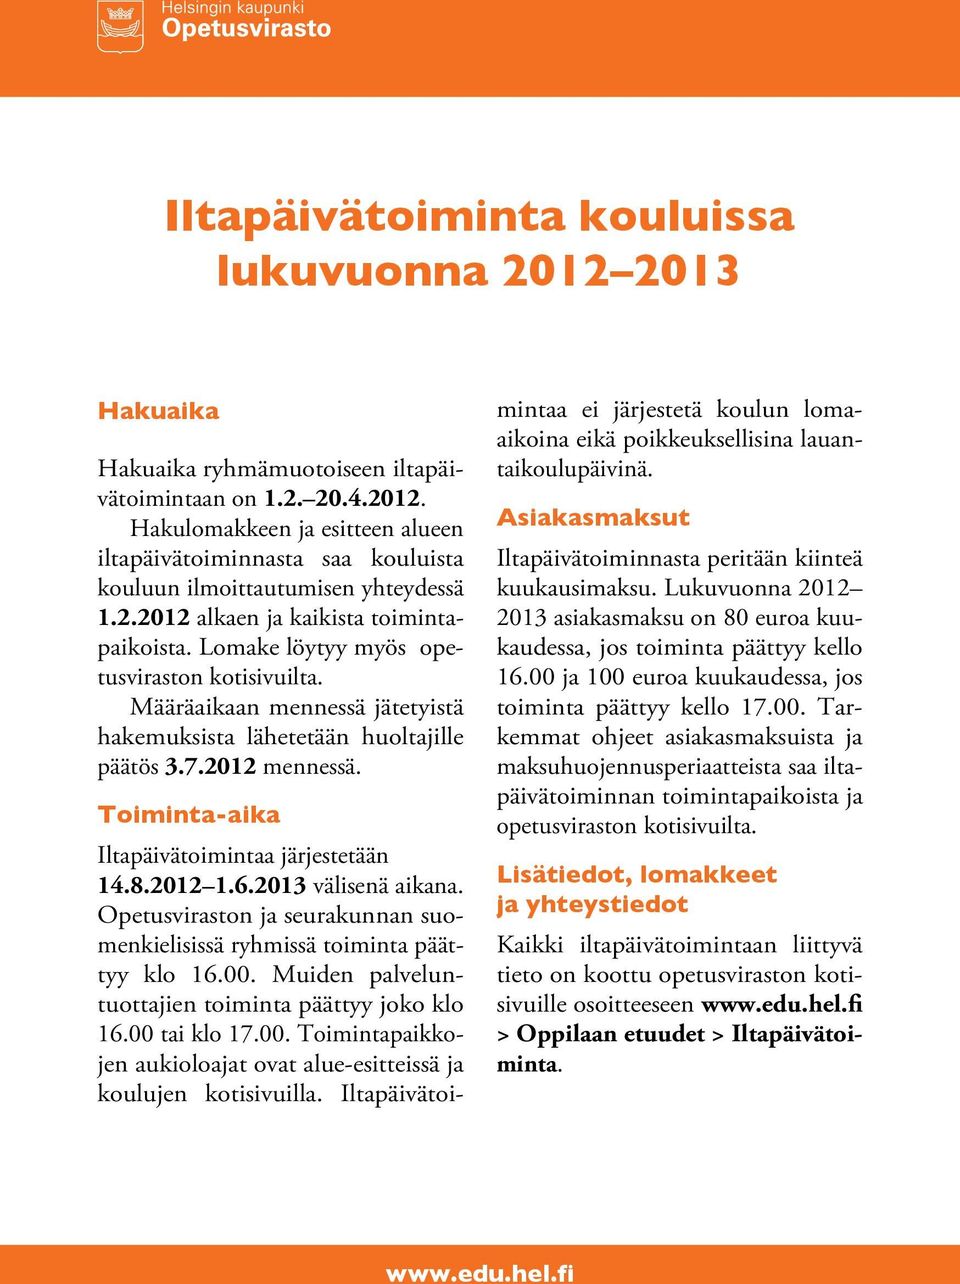 Toiminta-aika Iltapäivätoimintaa järjestetään 14.8.2012 1.6.2013 välisenä aikana. Opetusviraston ja seurakunnan suomenkielisissä ryhmissä toiminta päättyy klo 16.00.